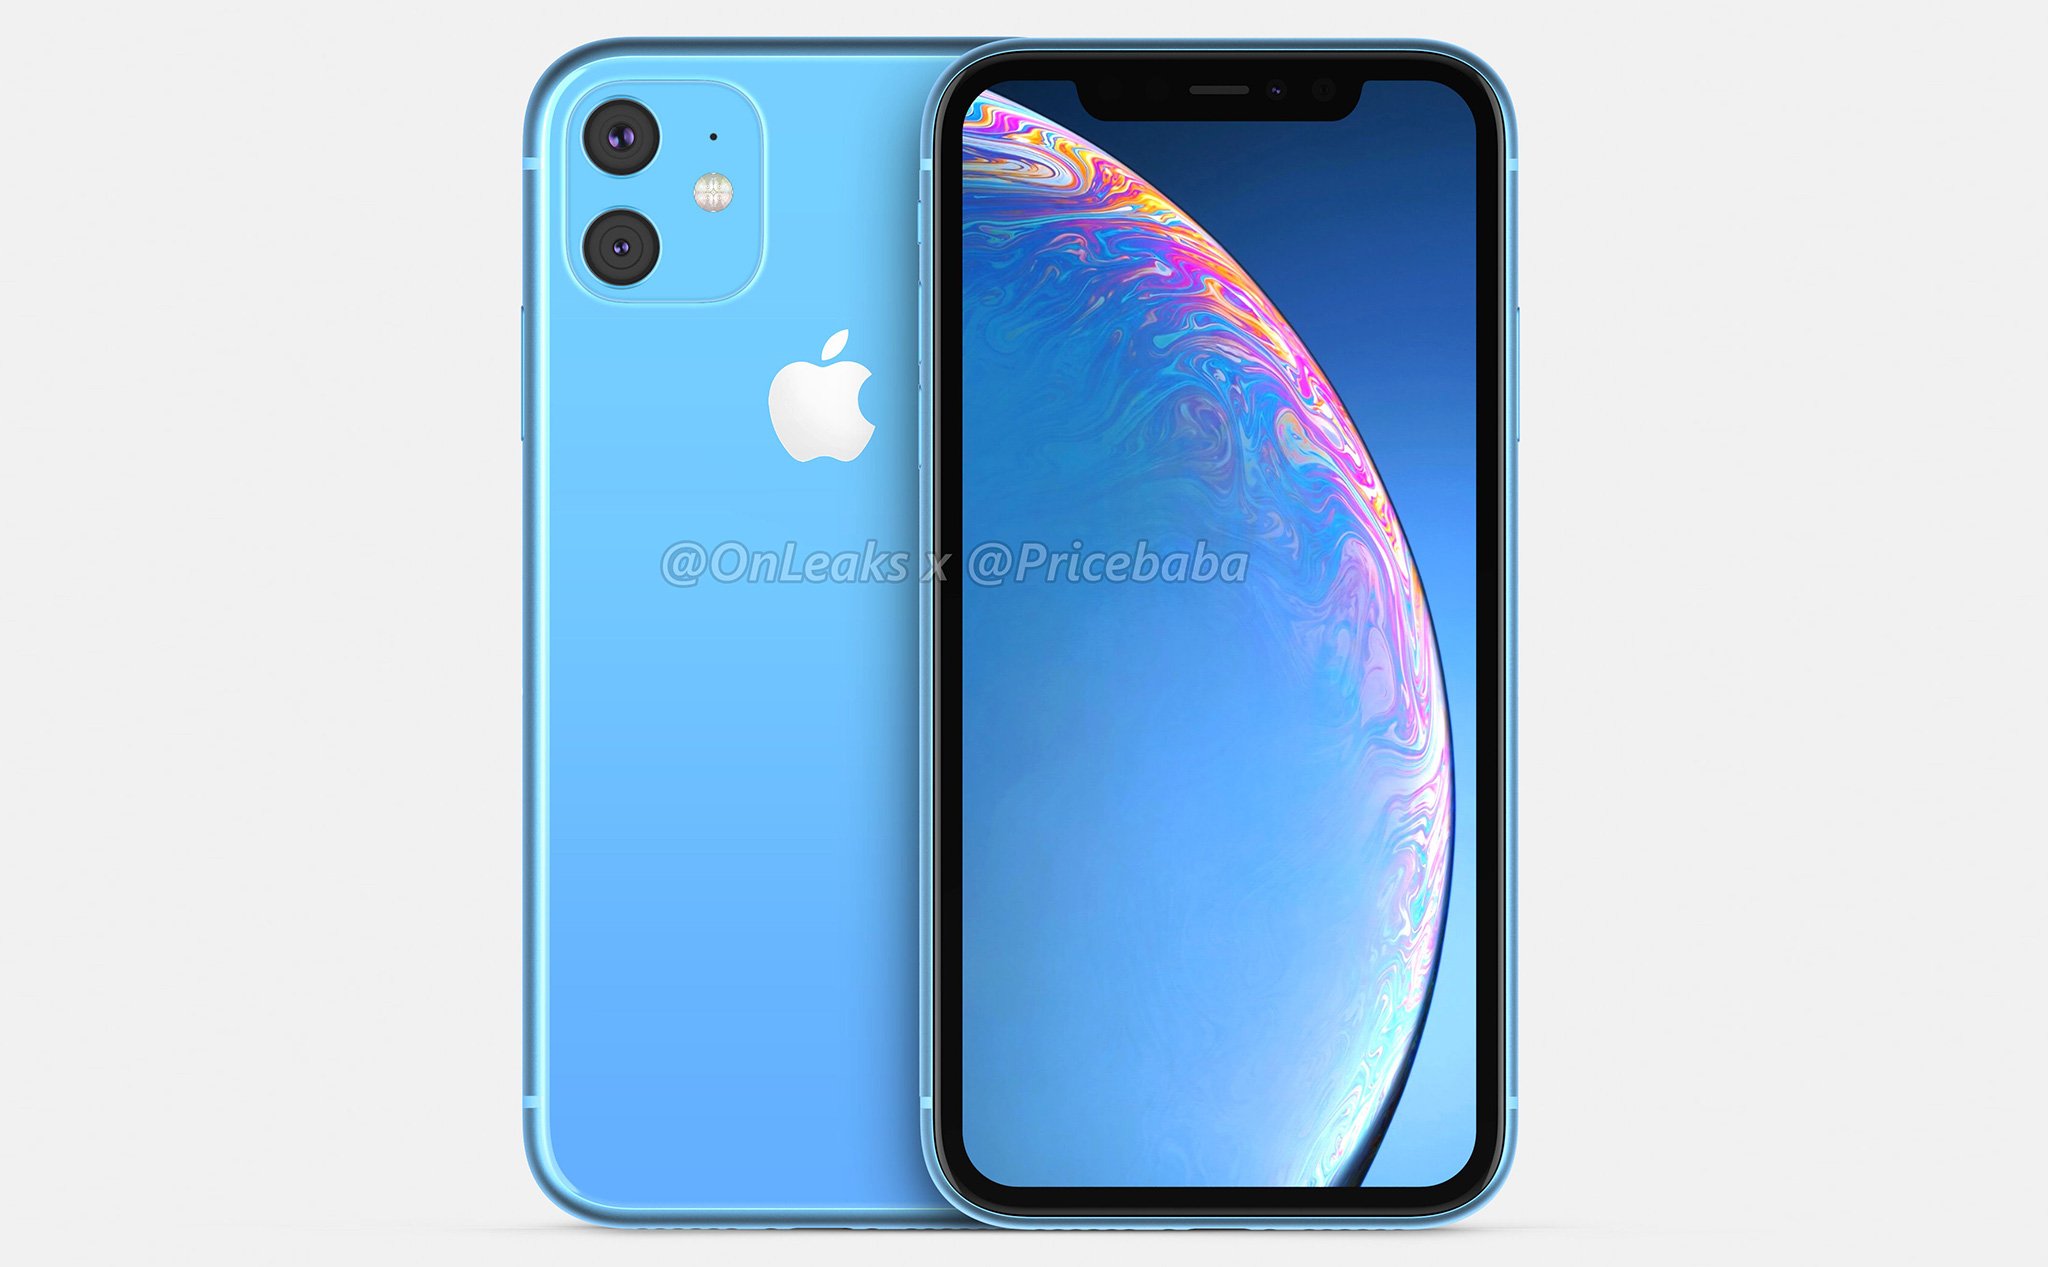 Hình ảnh render iPhone XR 2019 với 2 camera sau đặt thành cụm vuông, mặt trước không đổi